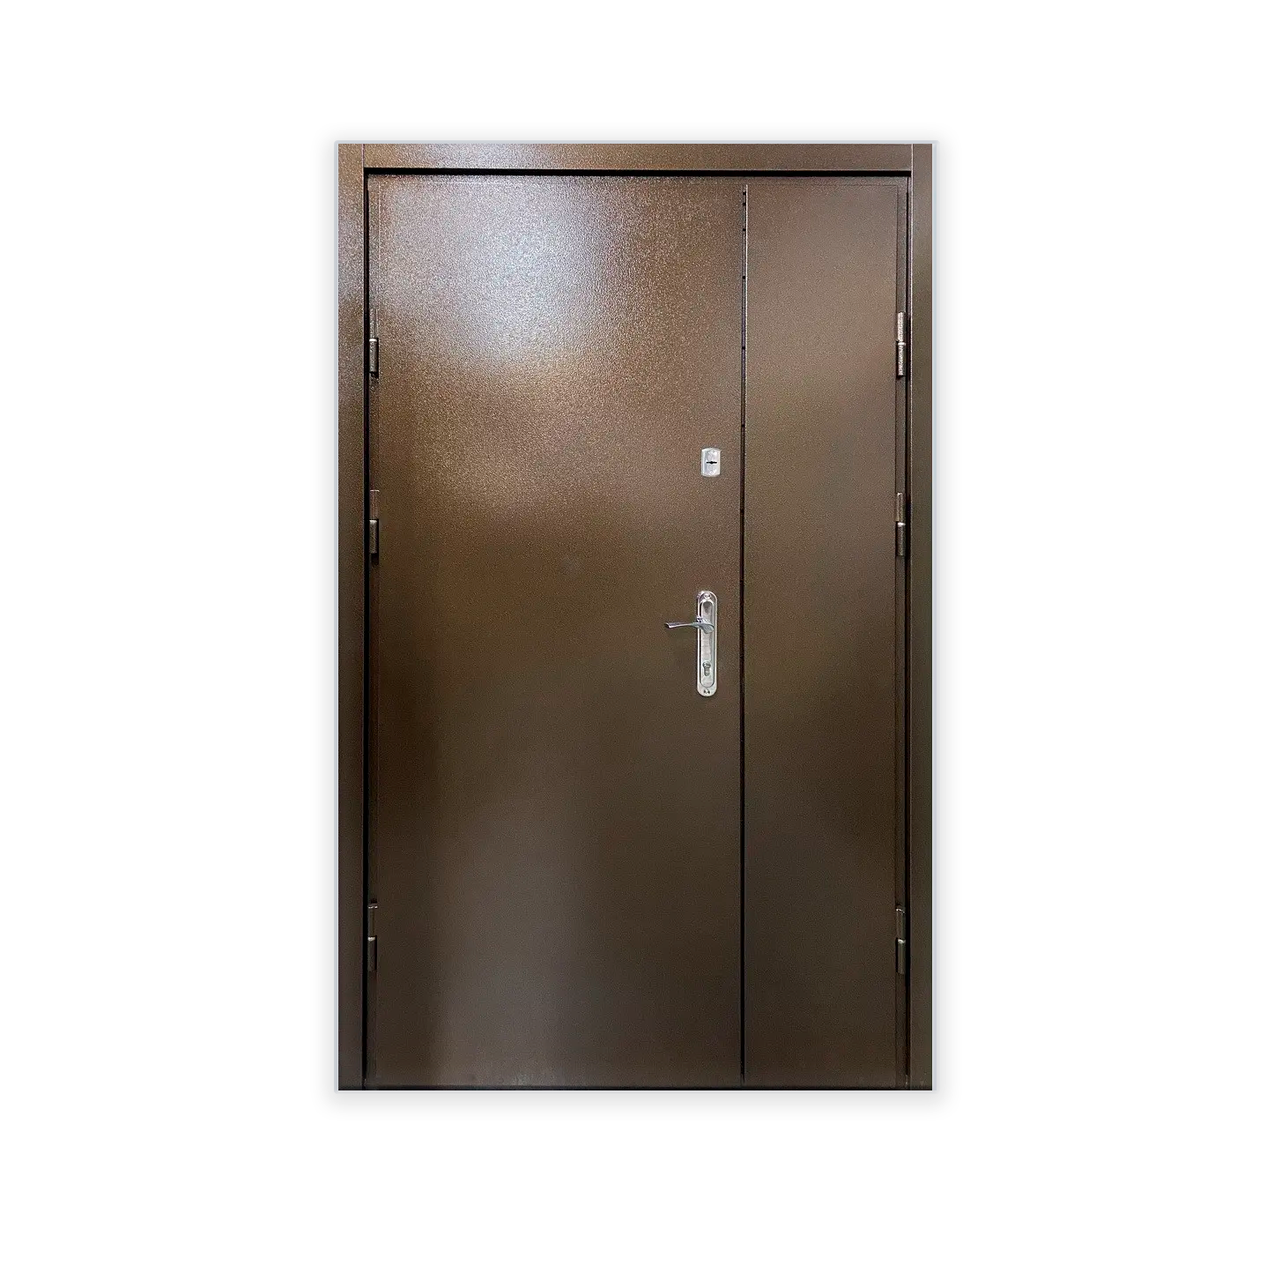 Металеві технічні двері з акустичною ізоляцією для магазину, складу, гаража й ангару.